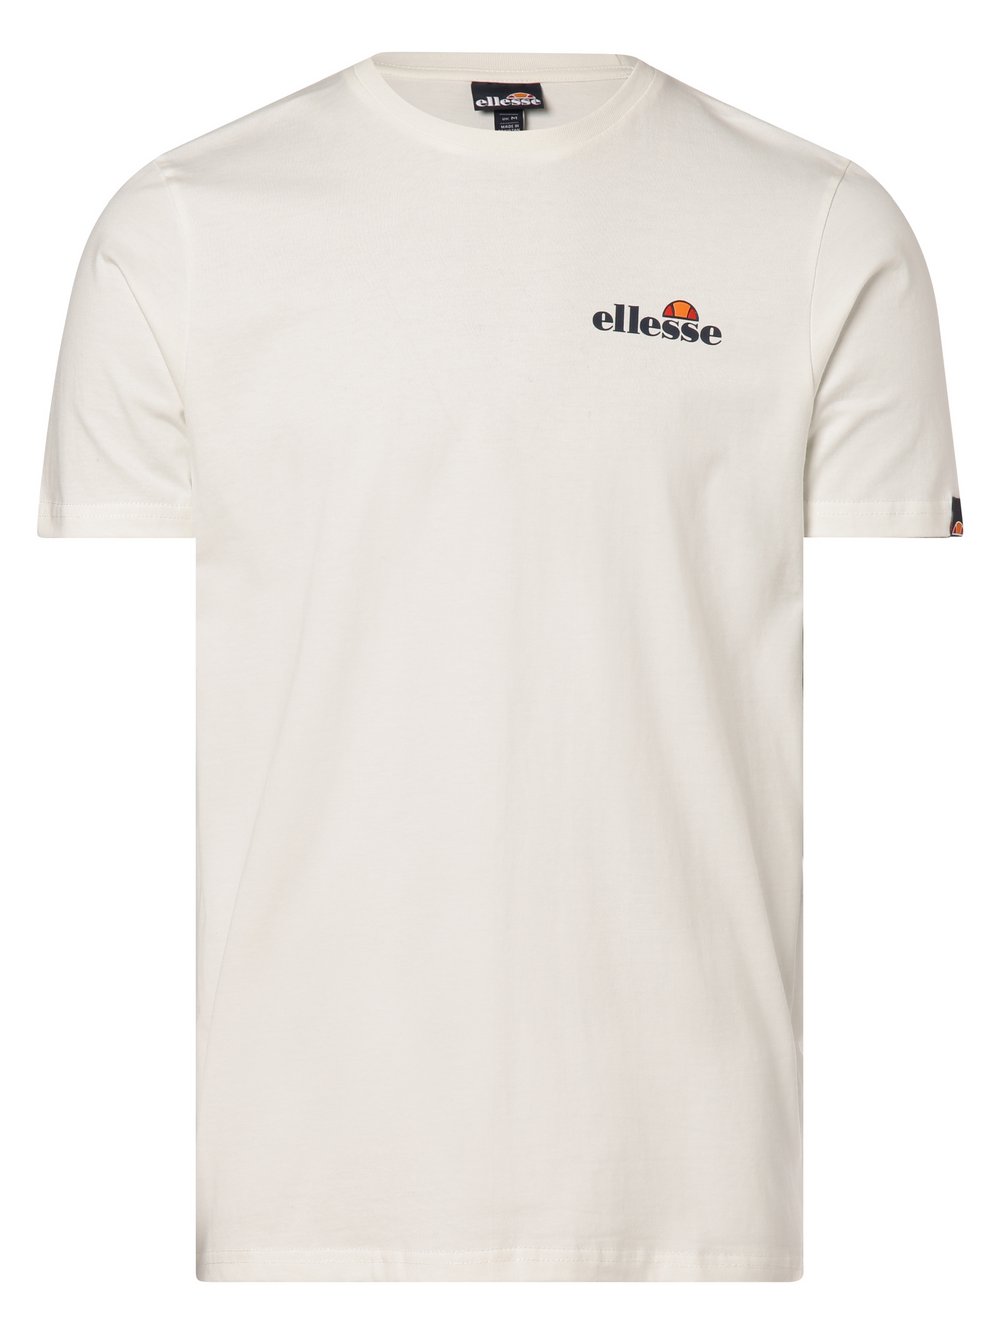 ellesse - T-shirt męski – Liammo, biały